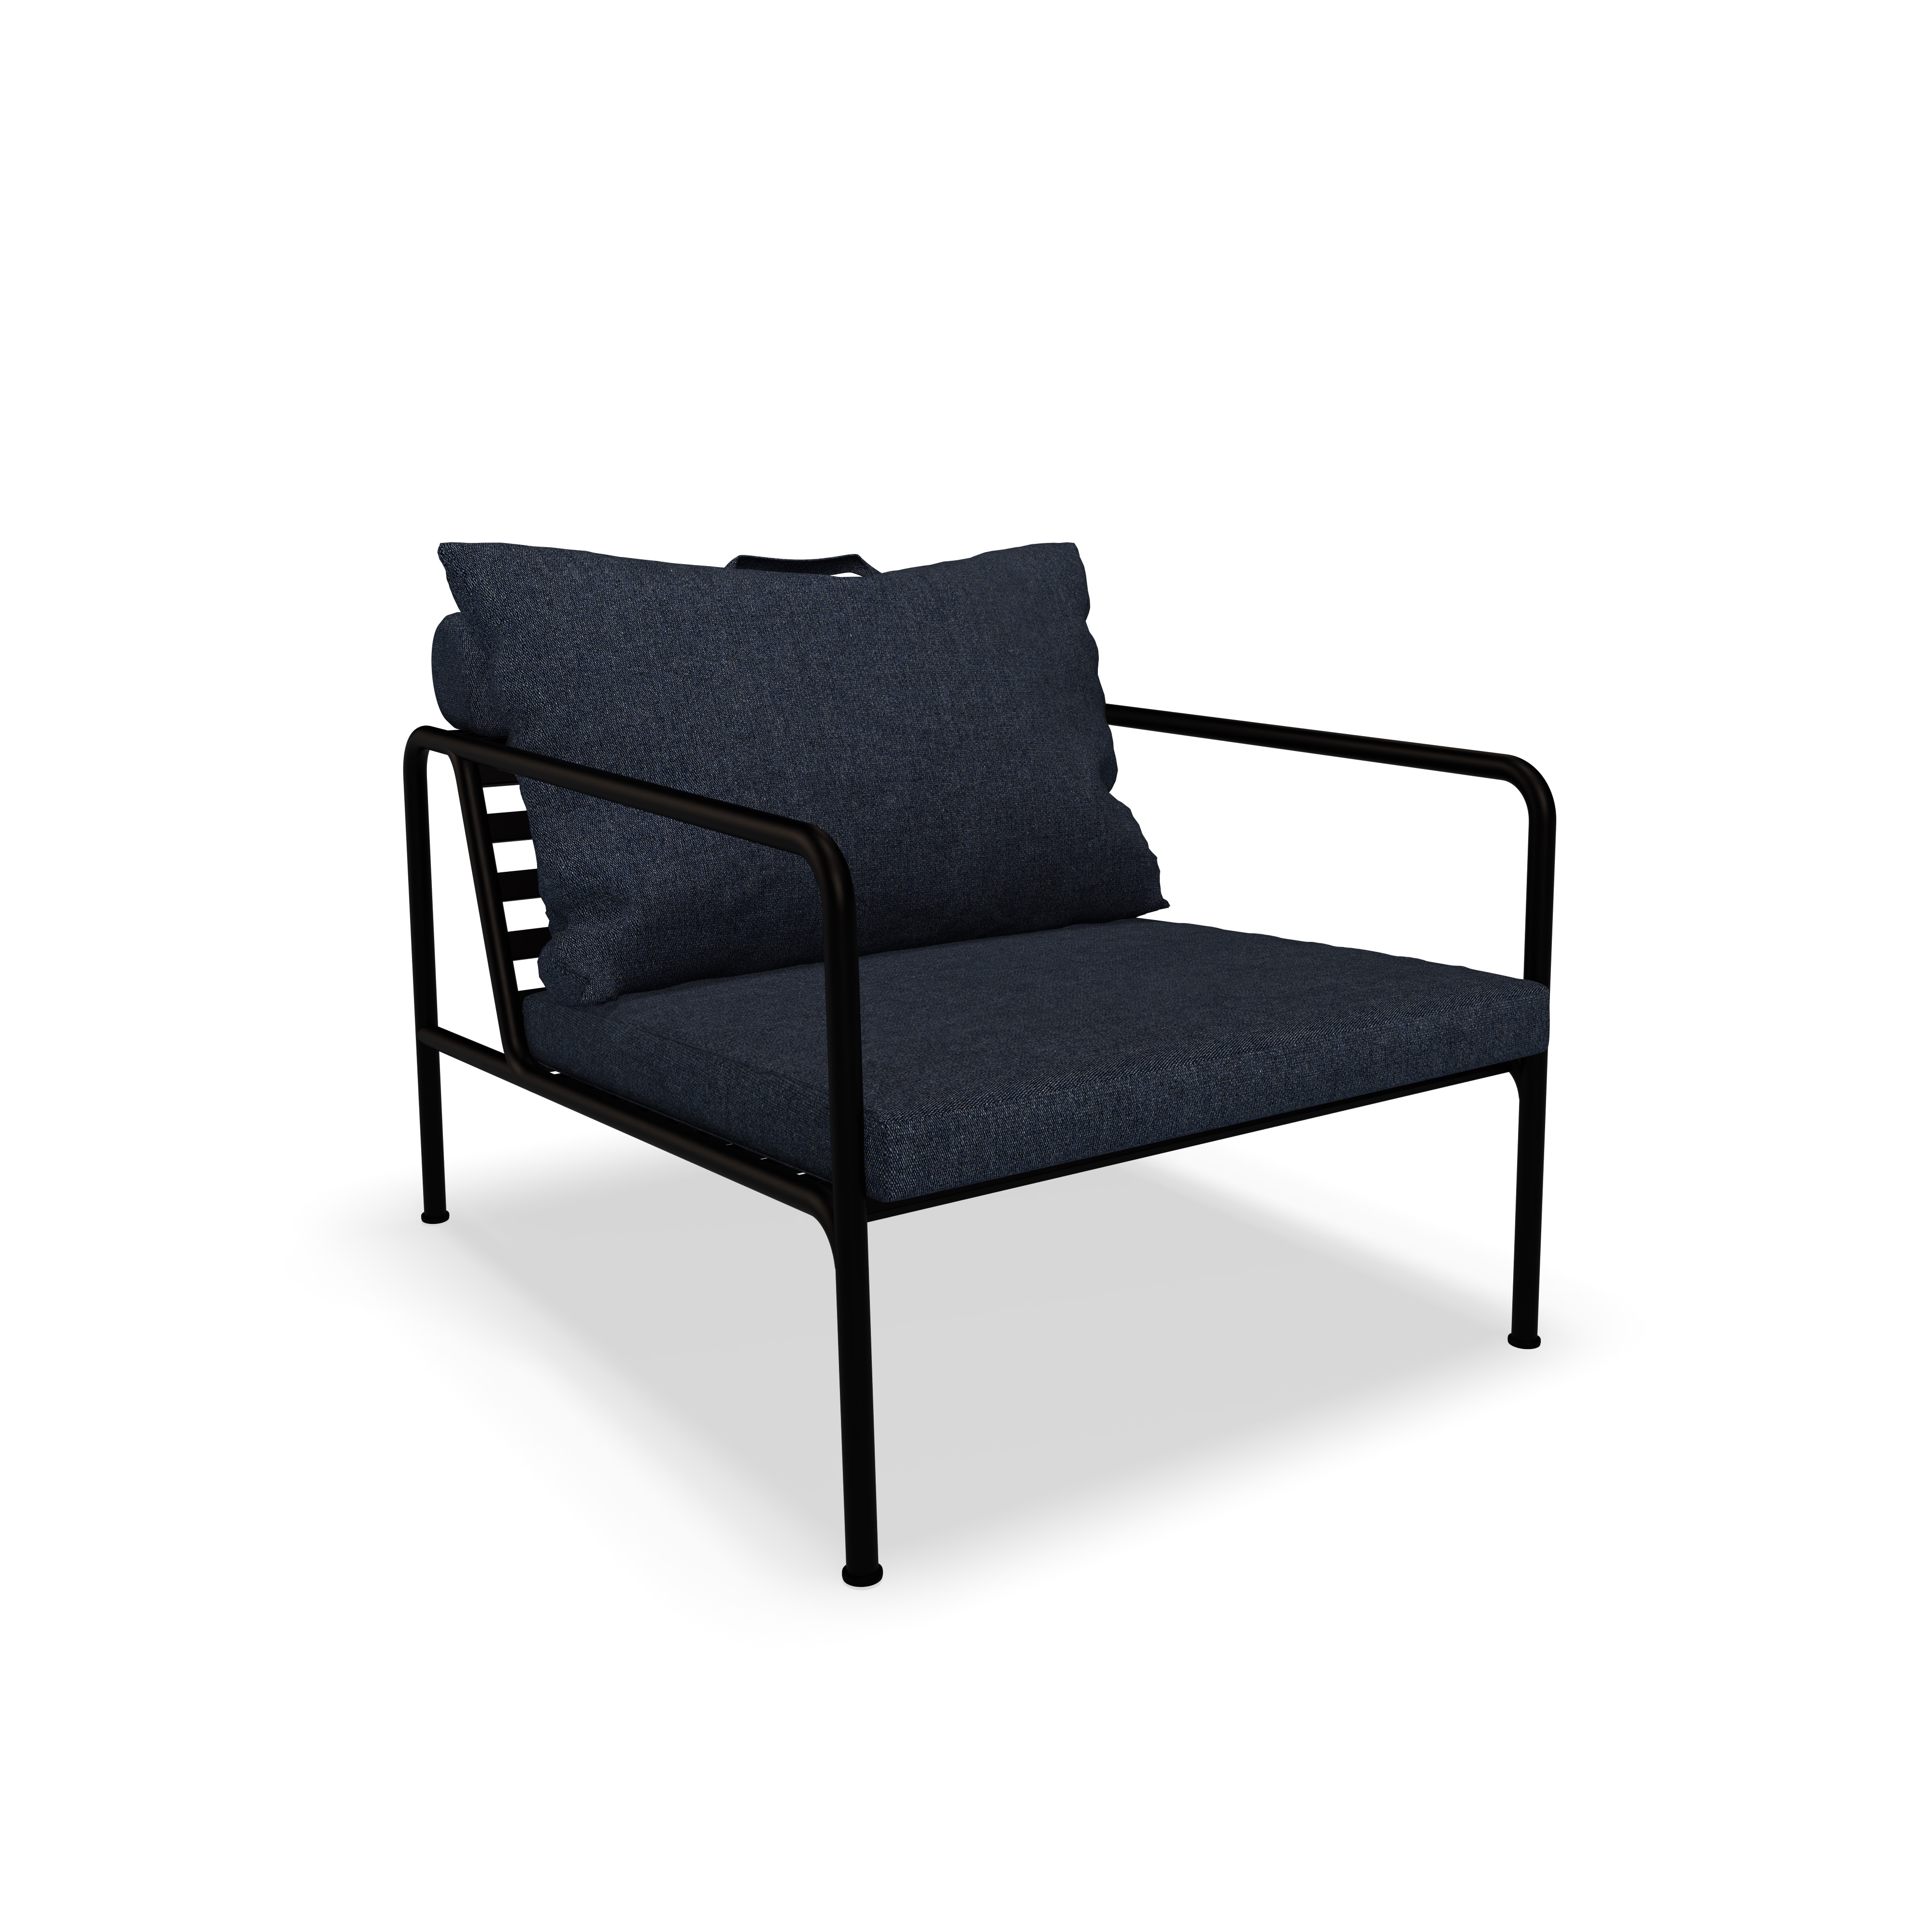 Lounge Chair Avon aus Heritage Special Stoff in Graublau